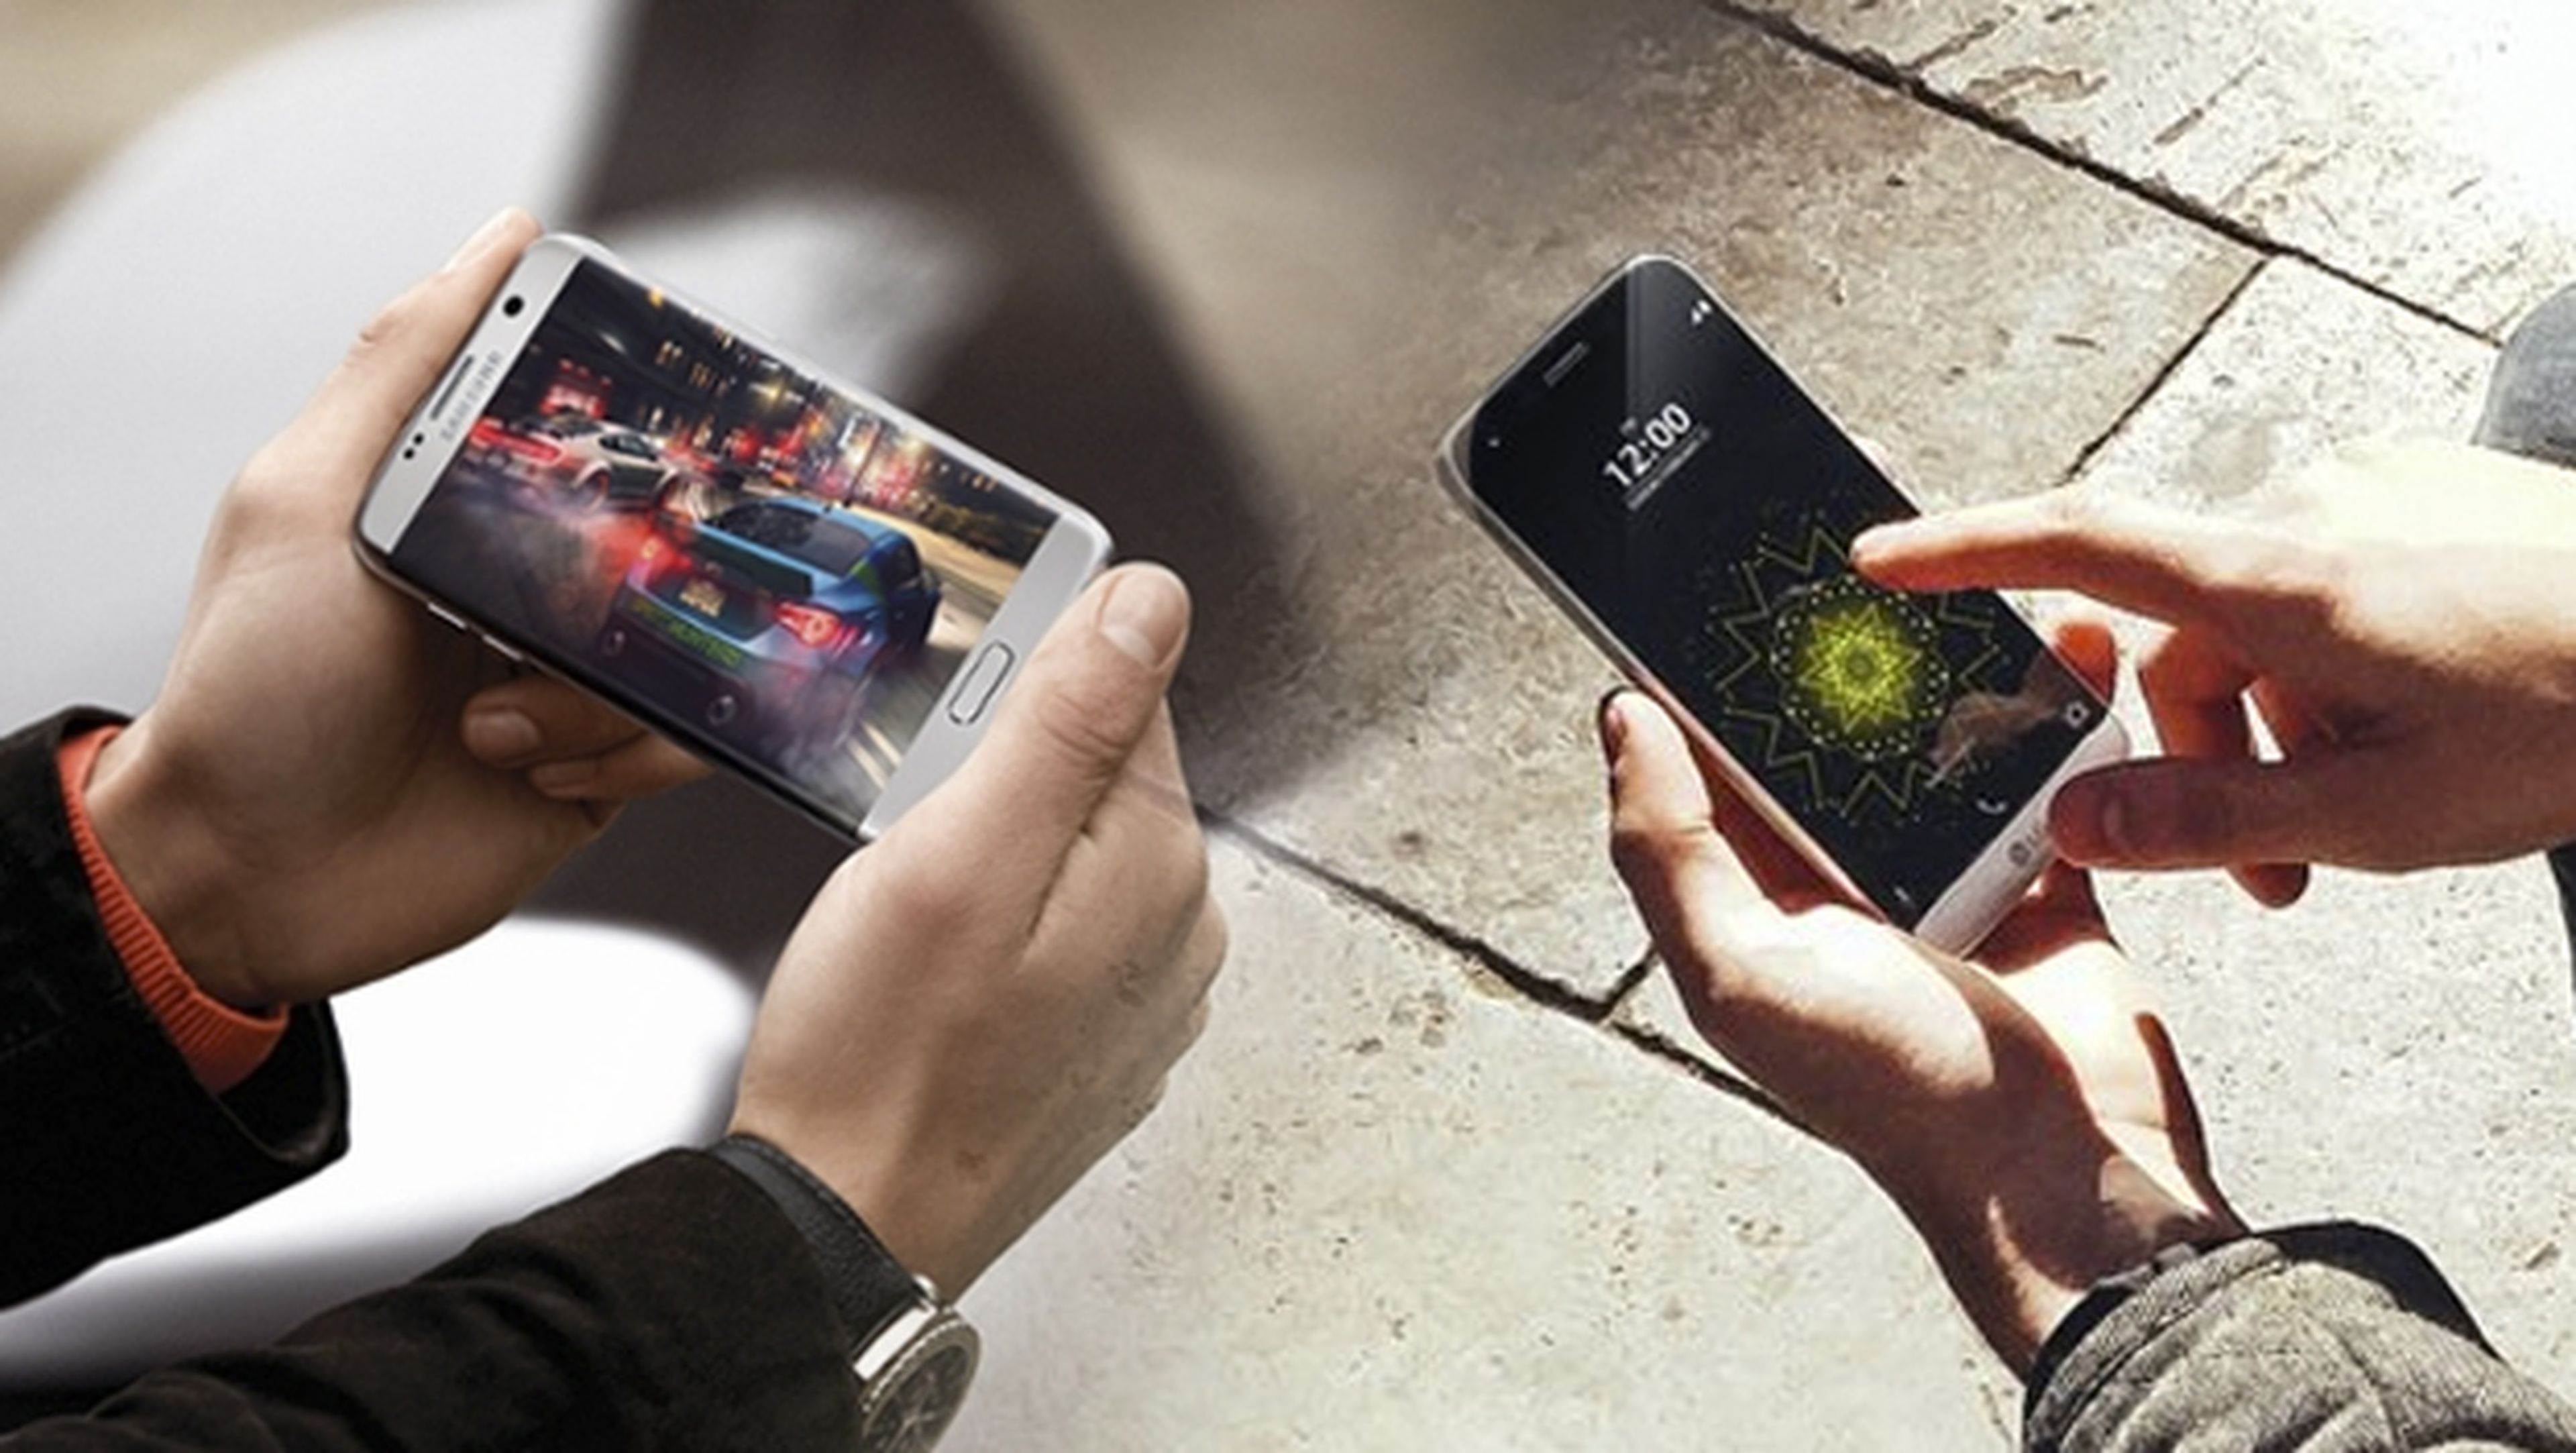 Comparativa Samsung Galaxy S7 vs. LG G5, elegimos el mejor